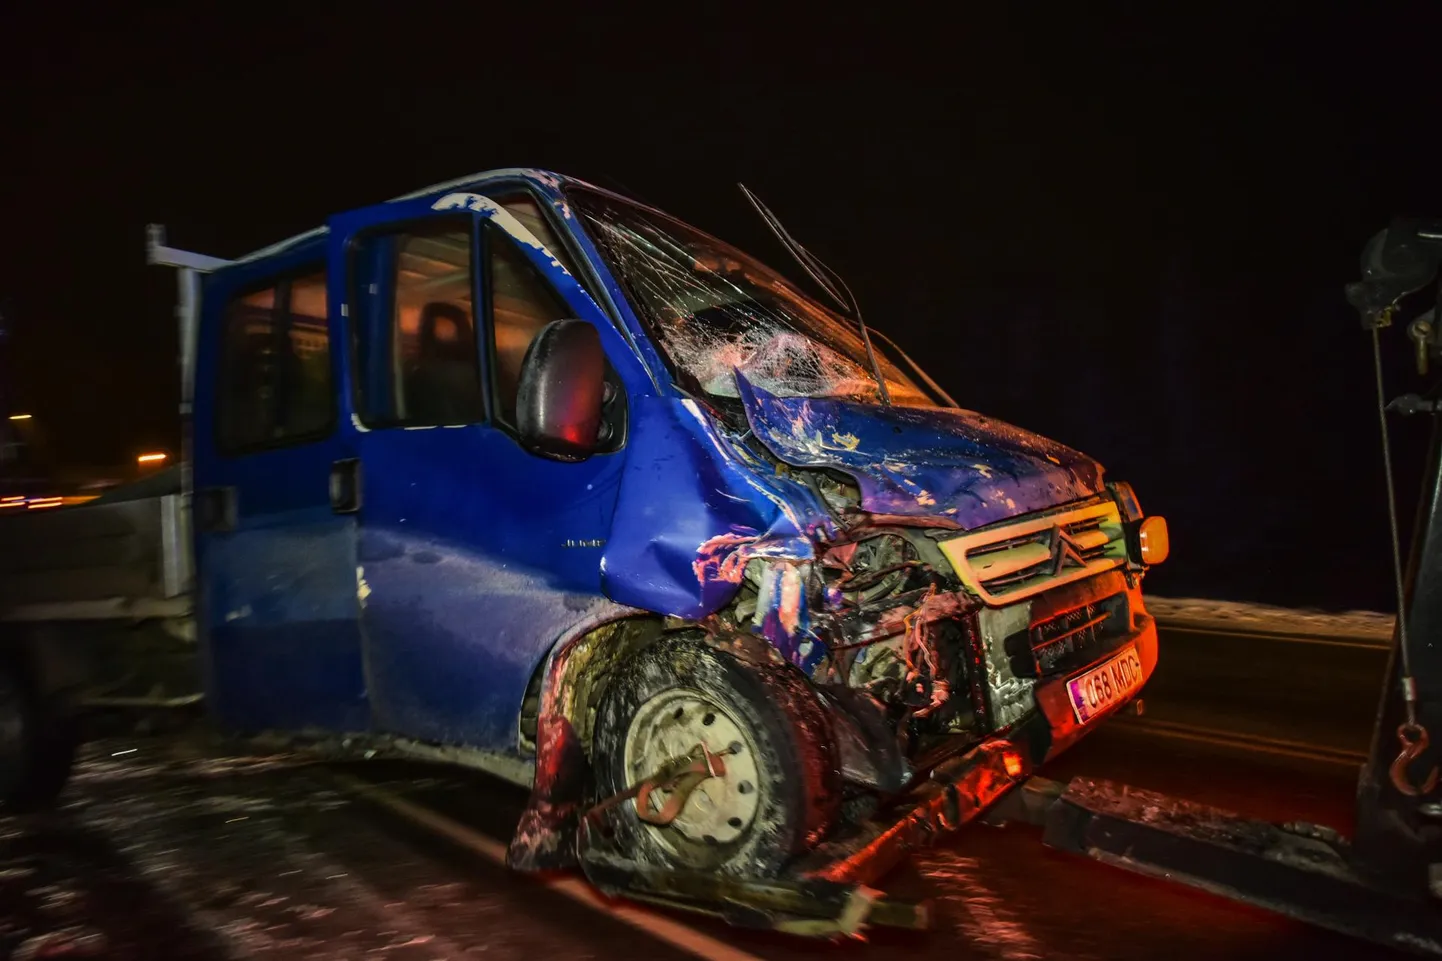 Esmaspäeval enne kella viit õhtul juhtus liiklusõnnetus Imavere–Viljandi–Karksi-Nuia maantee 50. kilomeetril.